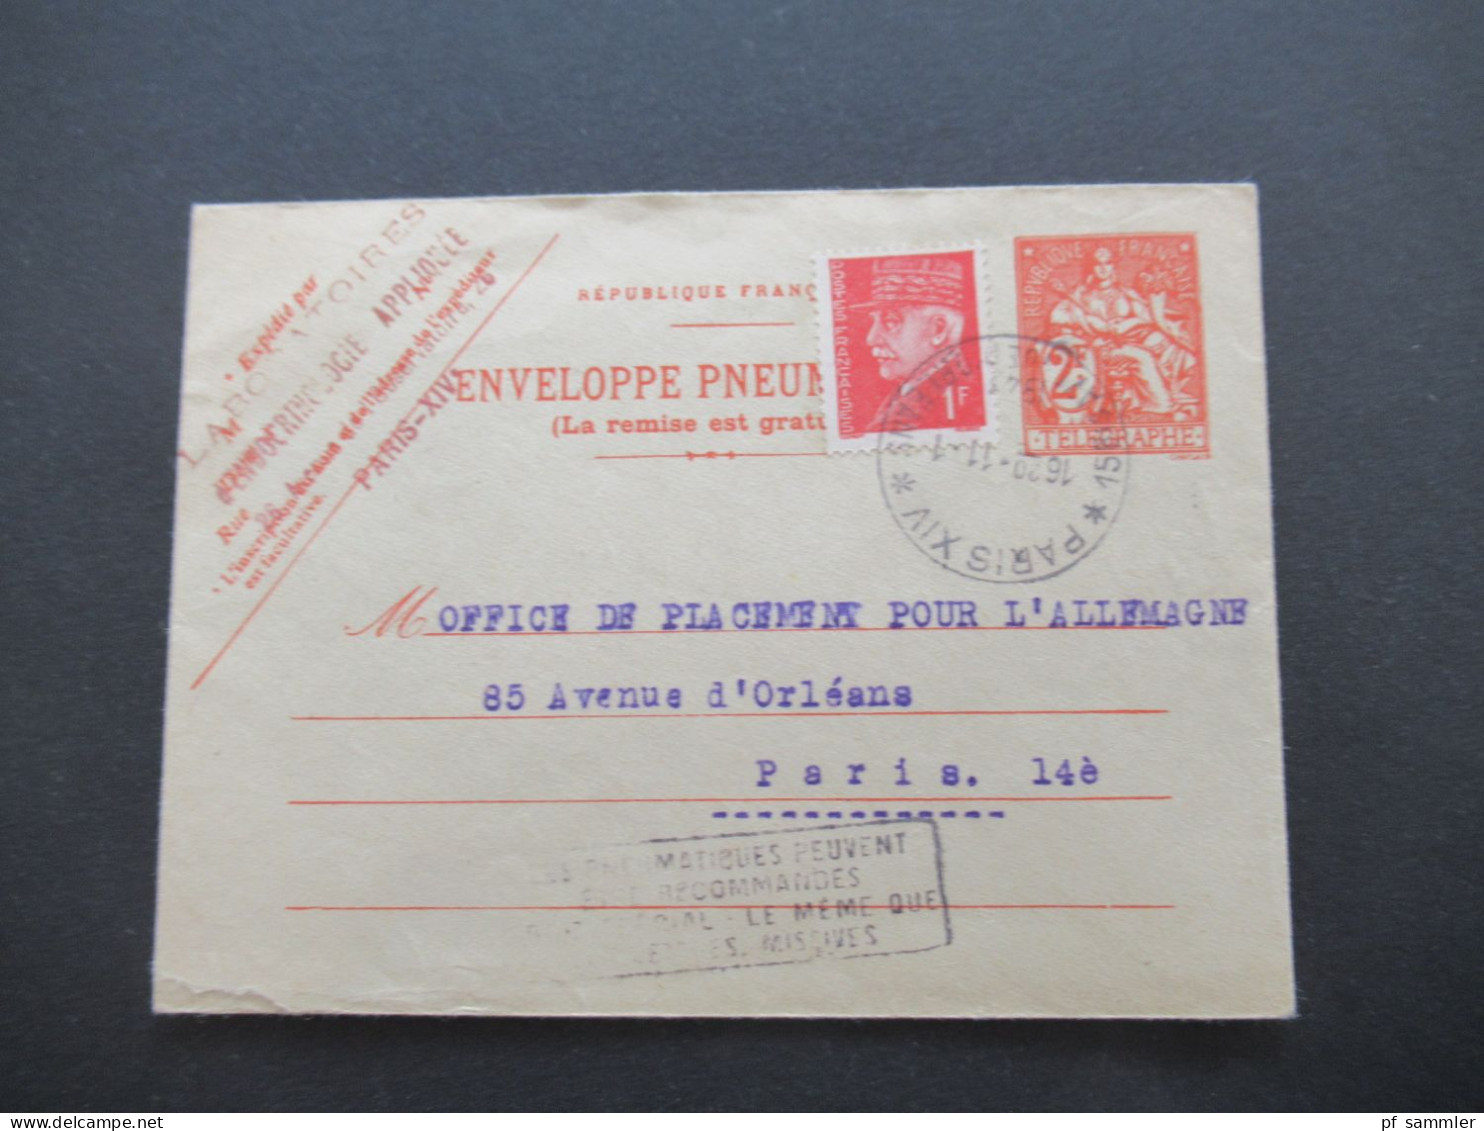 Frankreich Rohrpostumschlag RU 14 Verwendet 1943 Envelope Pneumatique / Mit Inhalt 4x Bon De Solidarité 1 Franc Notgeld - Pneumatic Post